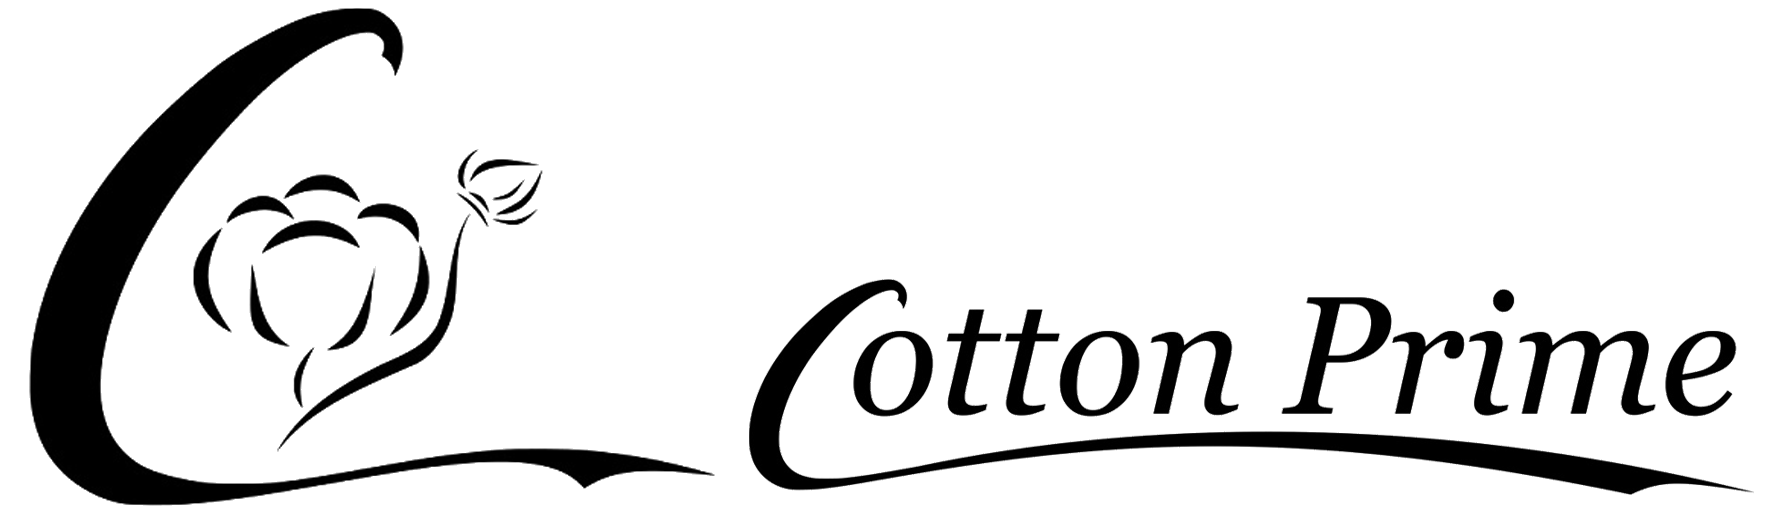 cottonprime.de - zur Startseite wechseln